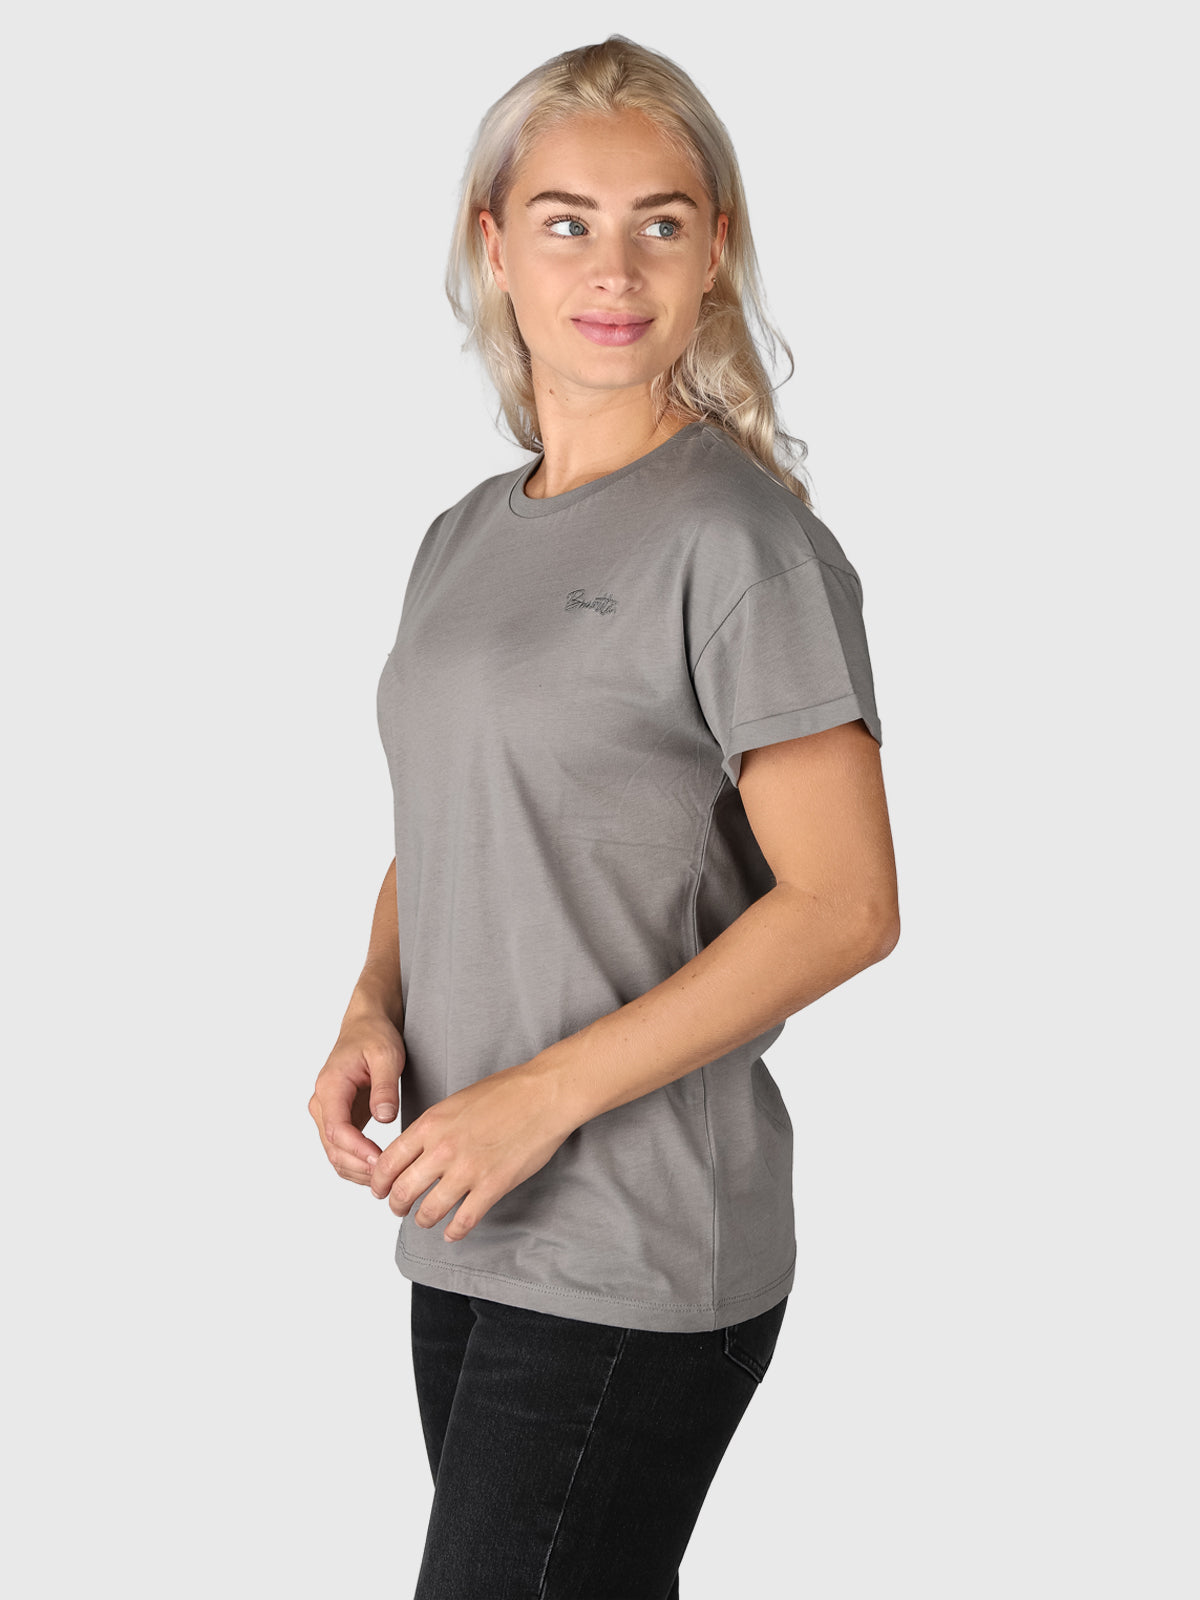 Samilla-R Damen T-shirt | Grau